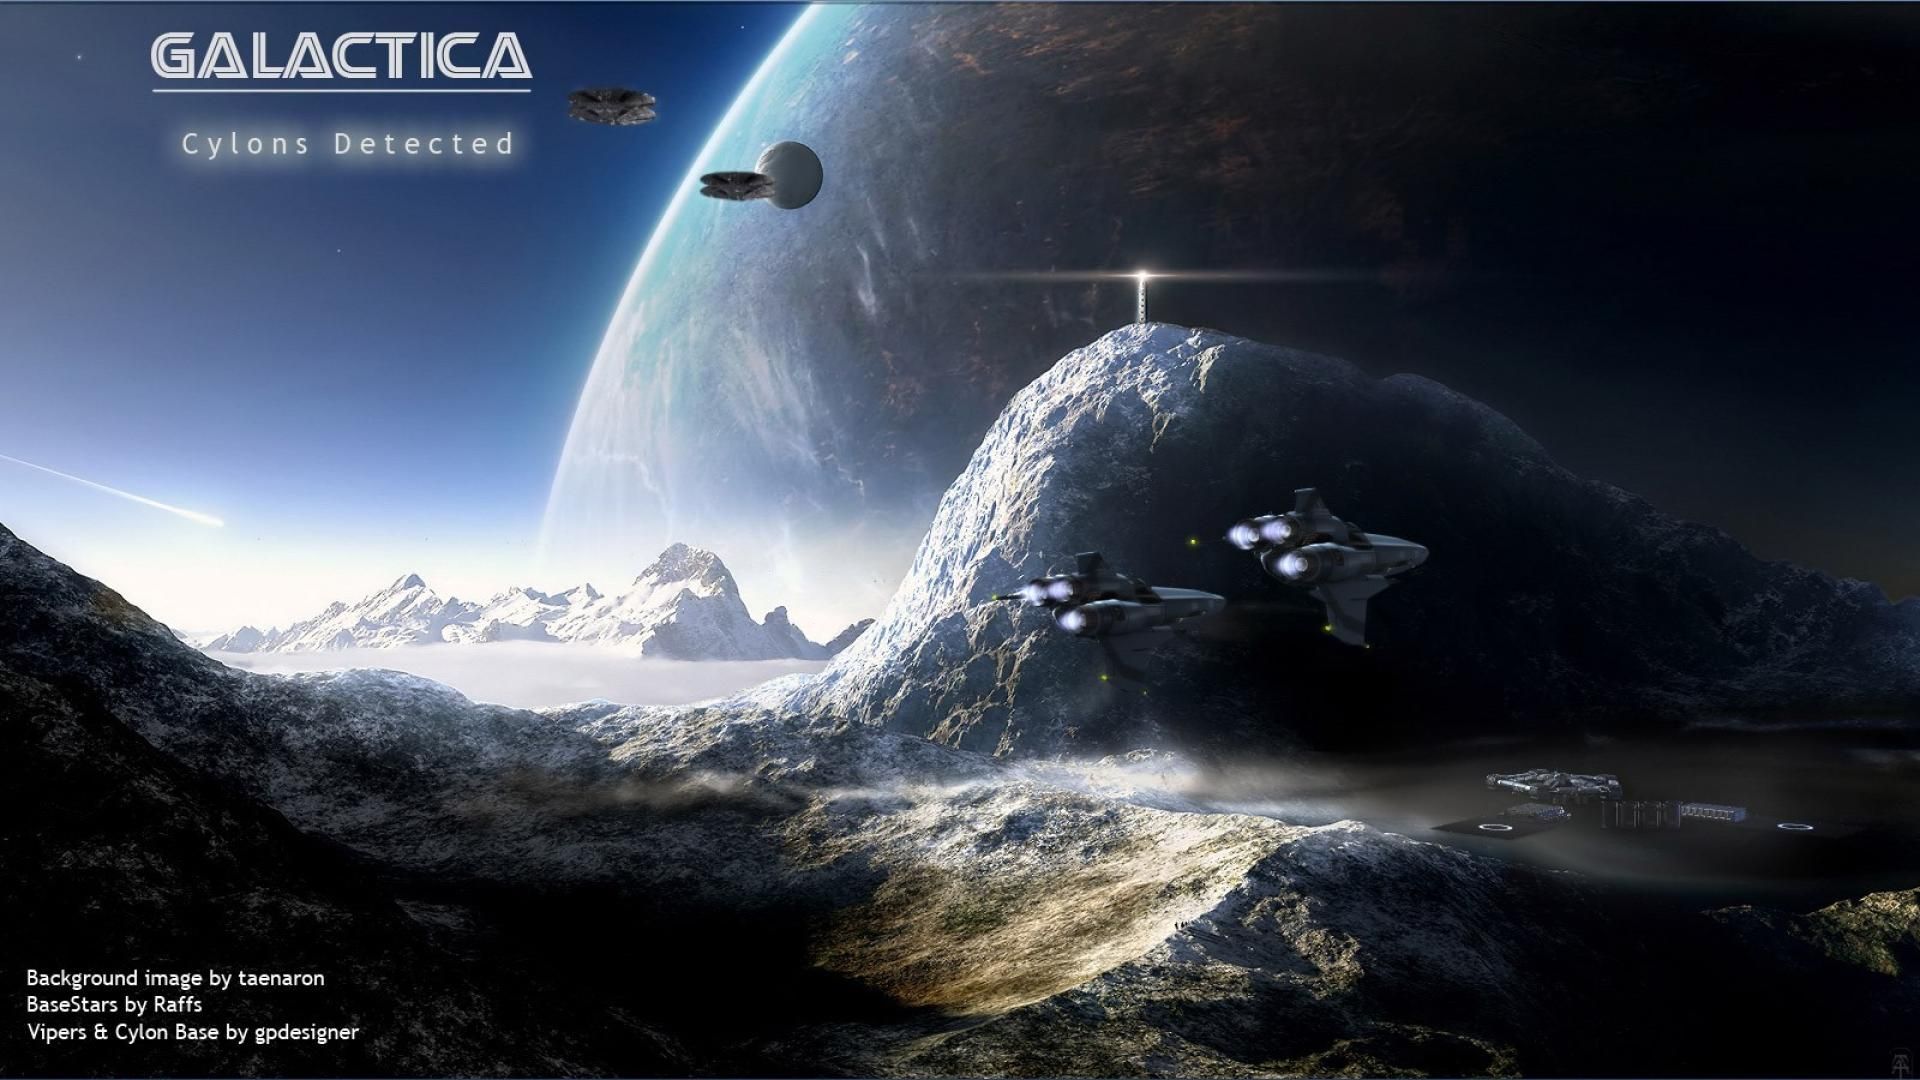 Battlestar Galactica HD Wallpaper. Space art